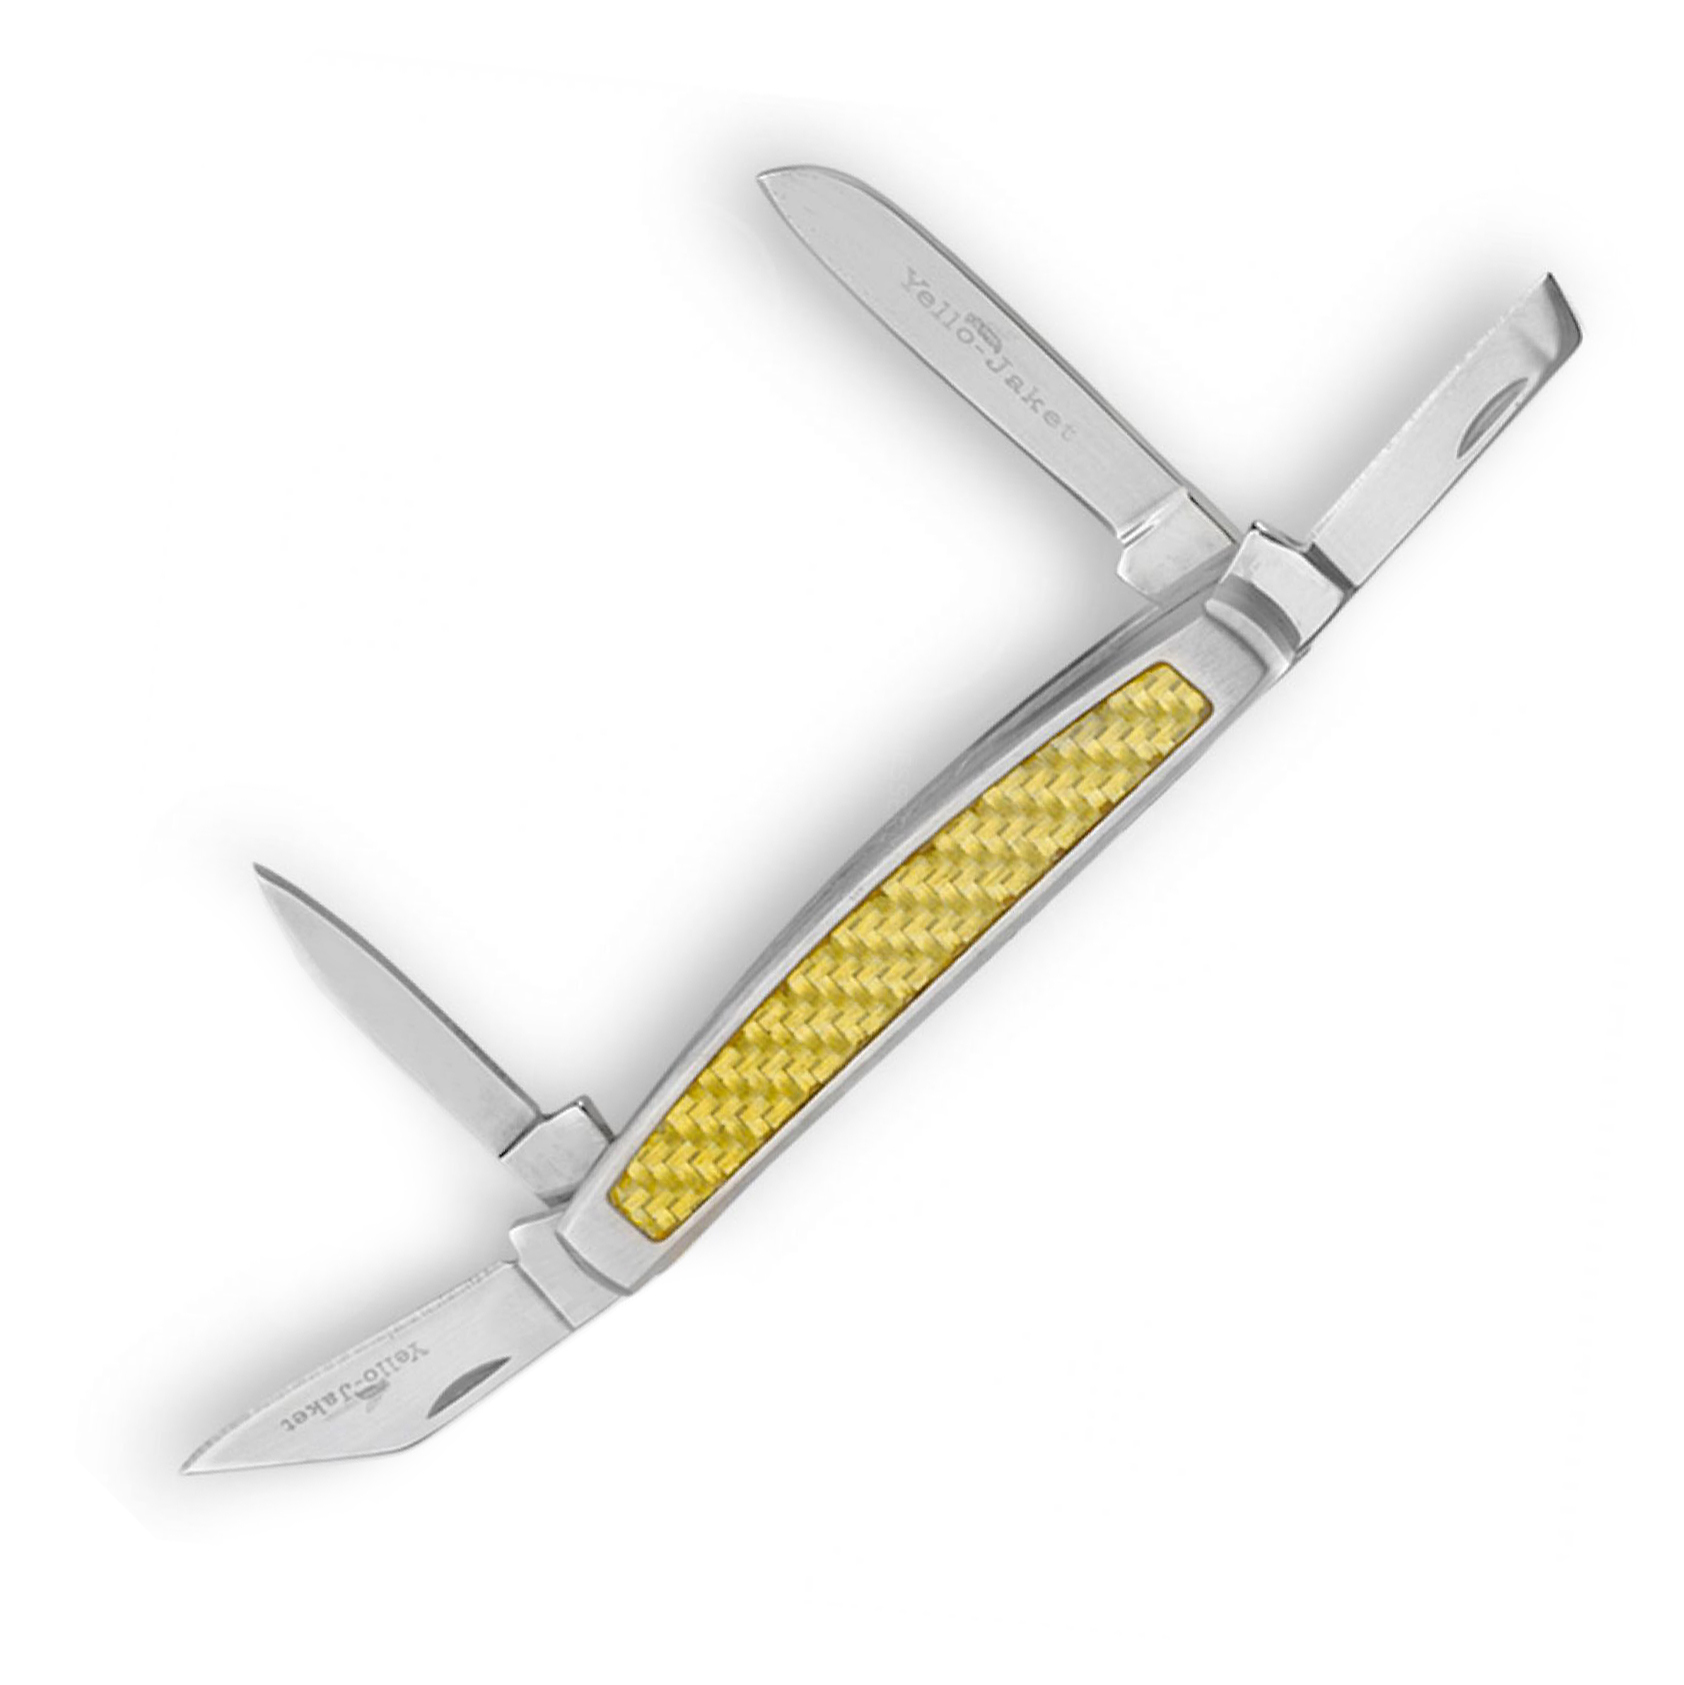 Складной нож Camillus Yello-Jaket 4-blade Congress Pocket, сталь AUS-8, рукоять Carbon Fiber, сталь